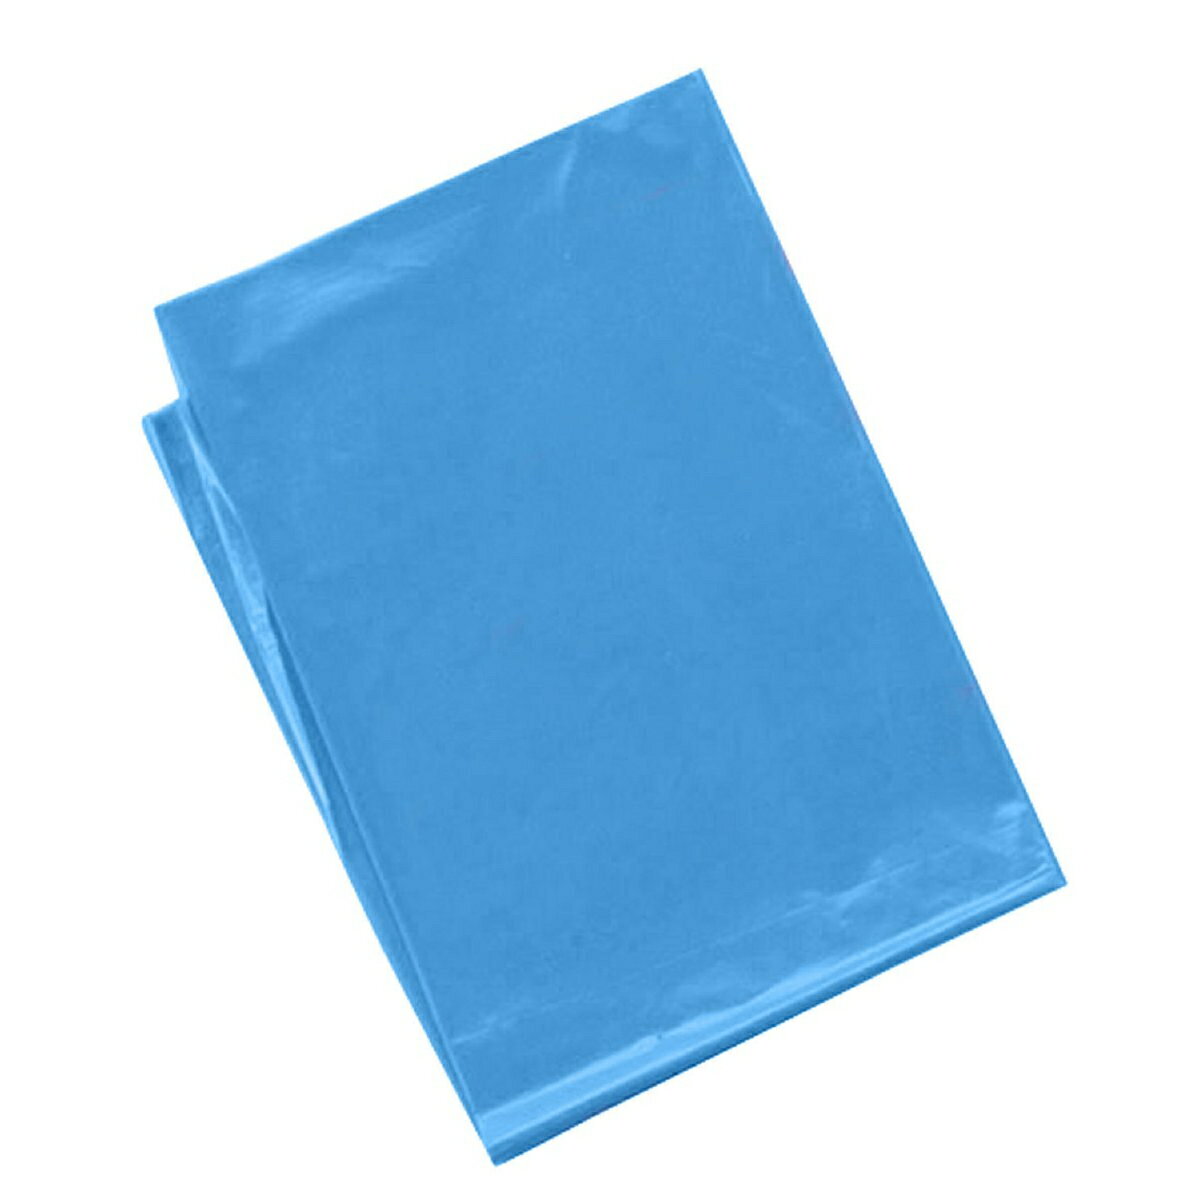 水色 カラービニール袋(10枚組) 45539 アーテック